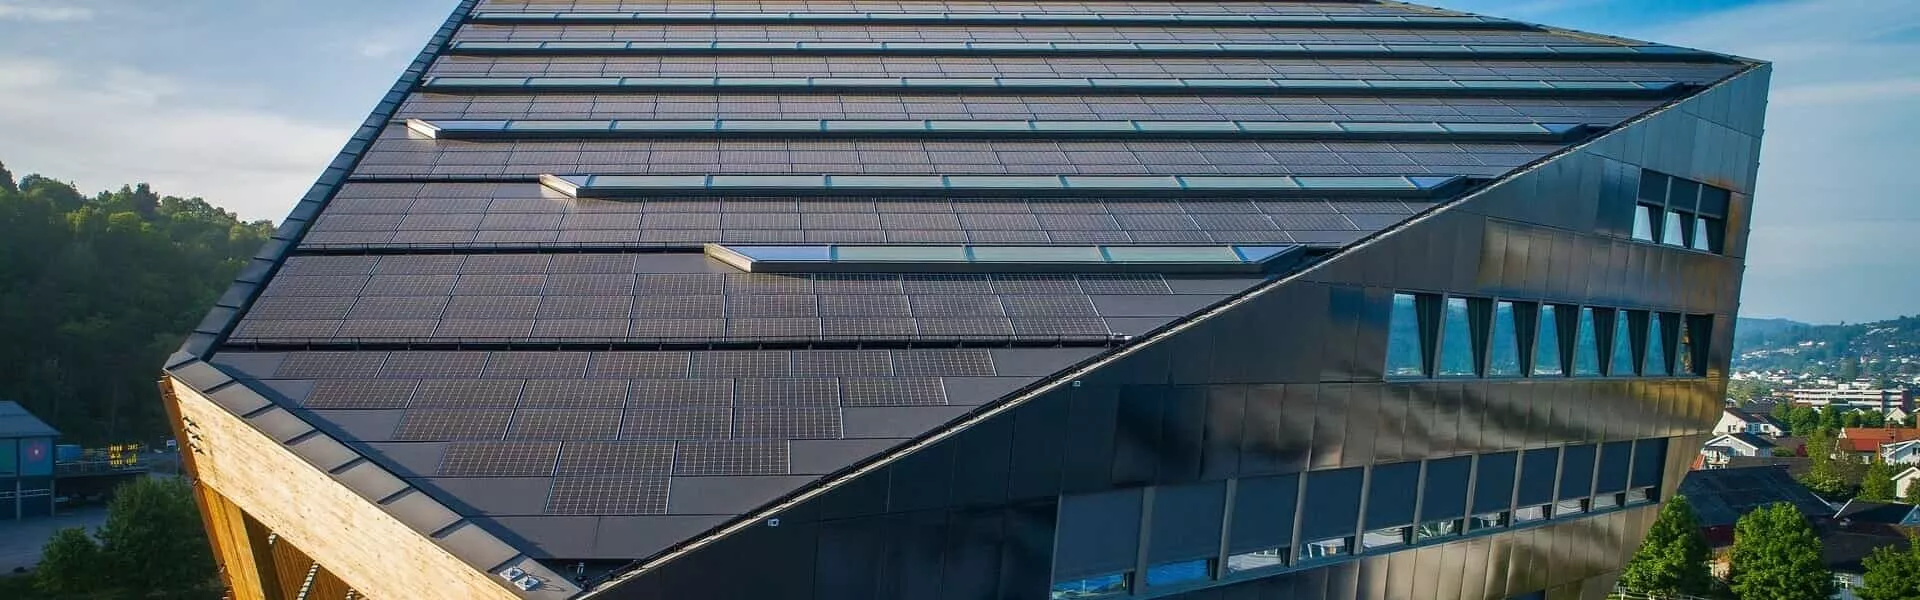 Maxeon Solar Technologiesによる新しいプロジェクトは、業界全体を脱炭素化するための基準を設定するのに役立つど同時にエネルギーポジティブな建物の建設における成果です。 